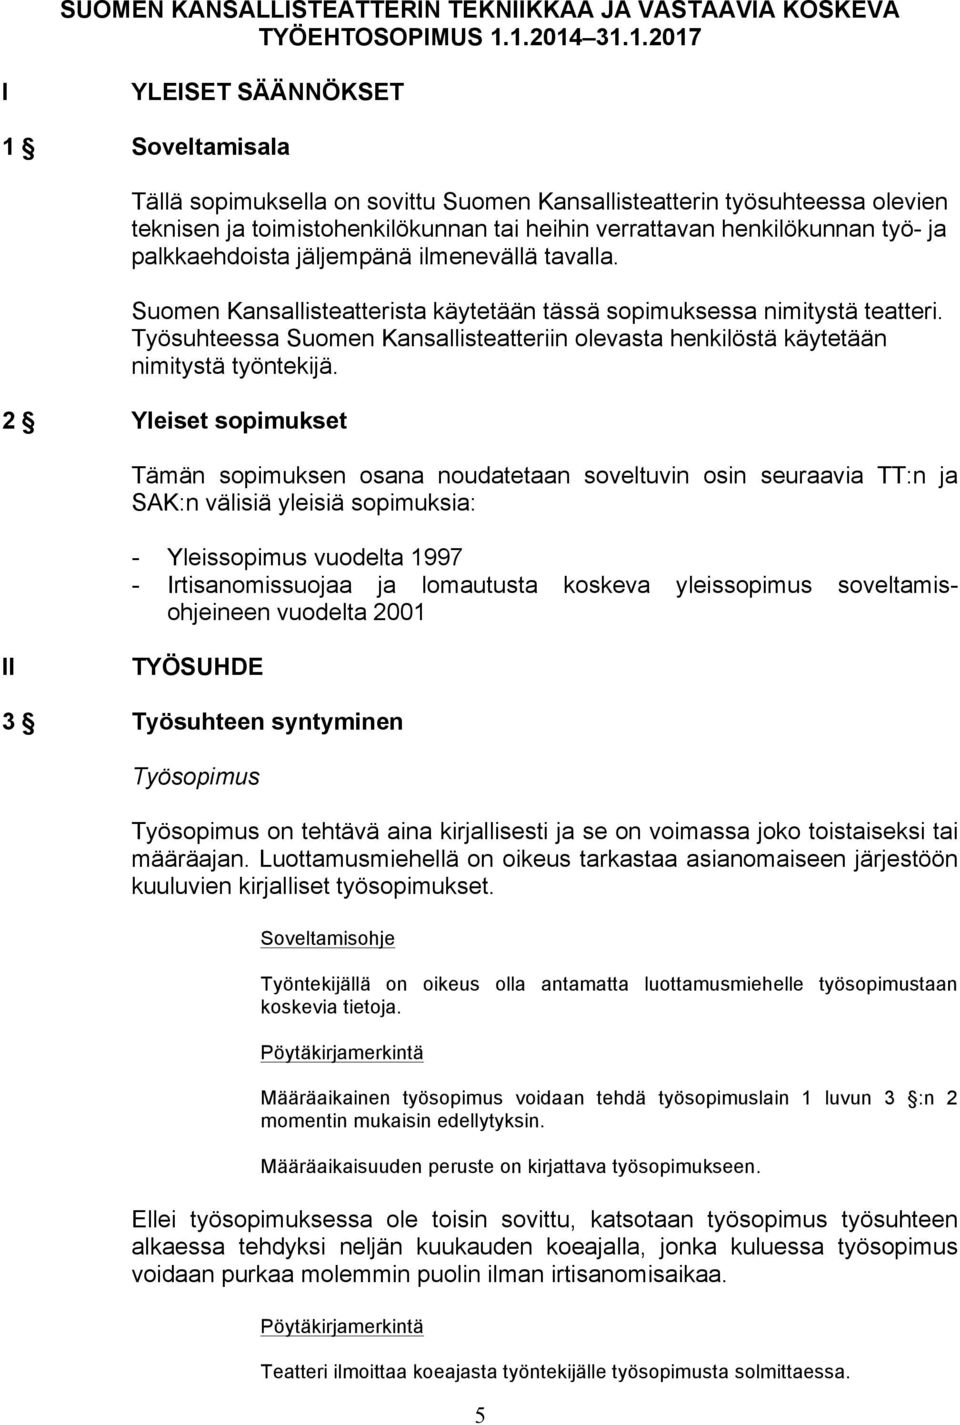 henkilökunnan työ- ja palkkaehdoista jäljempänä ilmenevällä tavalla. Suomen Kansallisteatterista käytetään tässä sopimuksessa nimitystä teatteri.